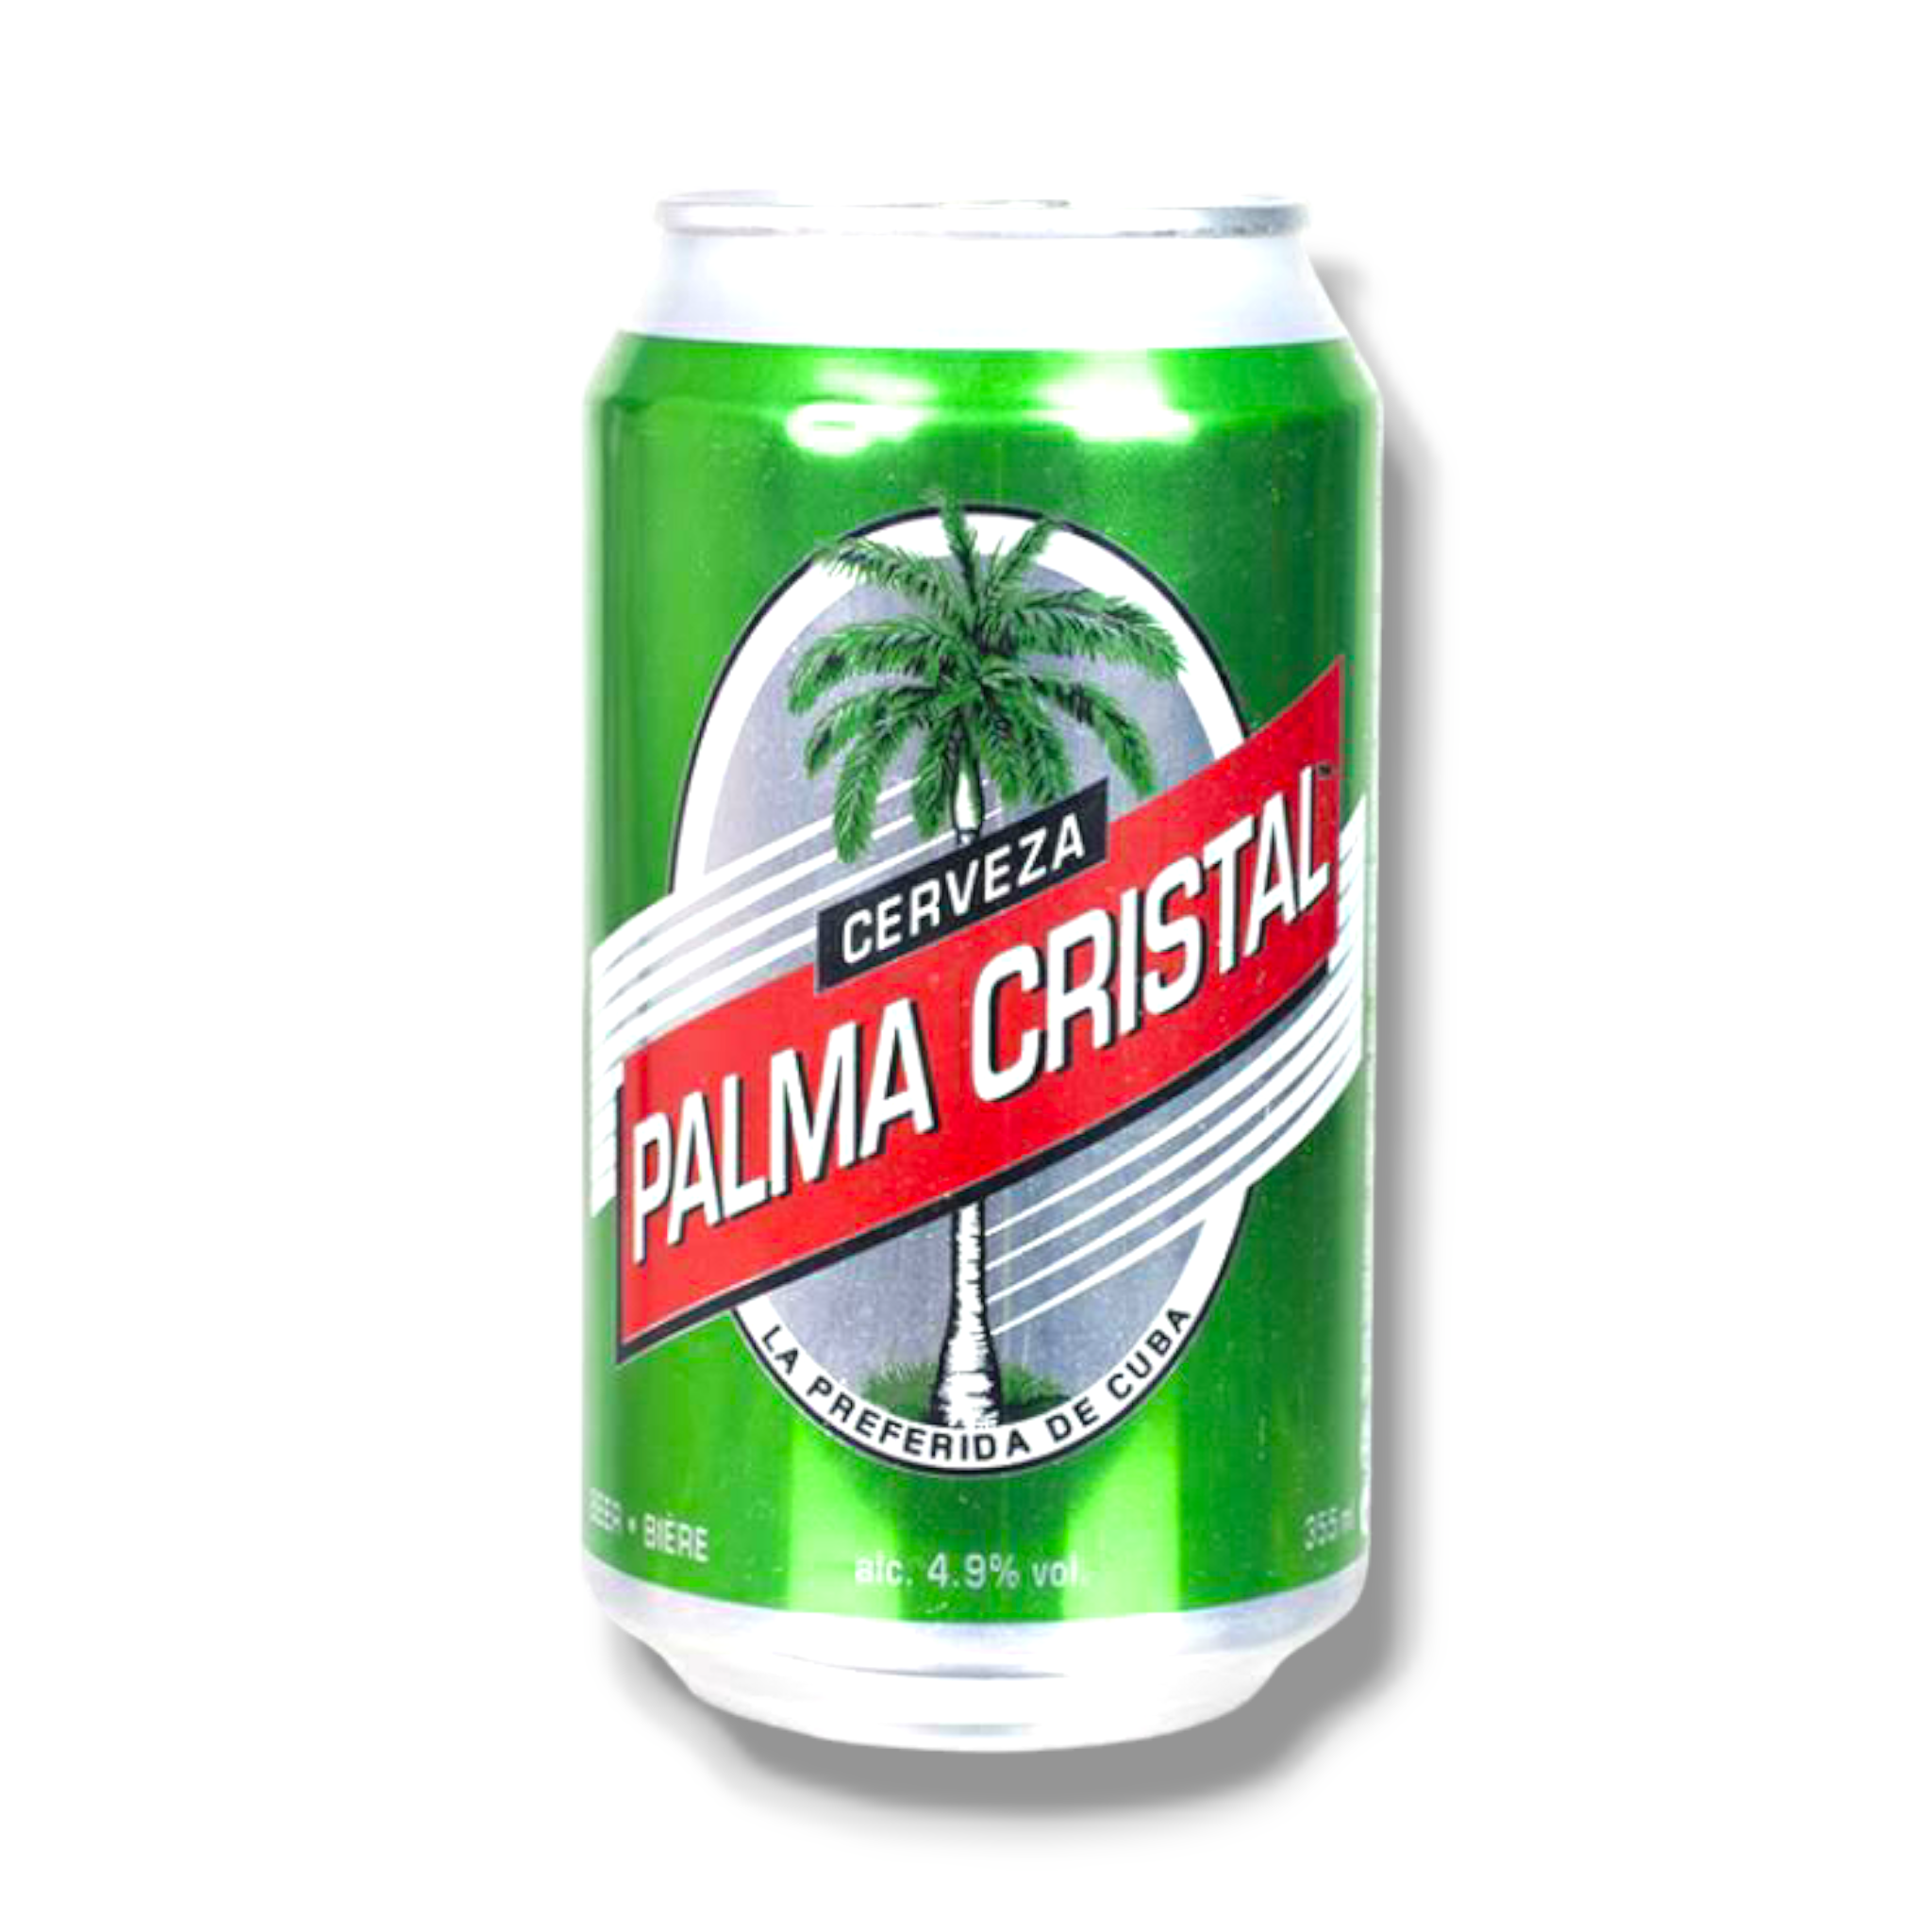 Palma Cristal 350ml Dose - Bier aus Kuba mit 4,9% Vol.